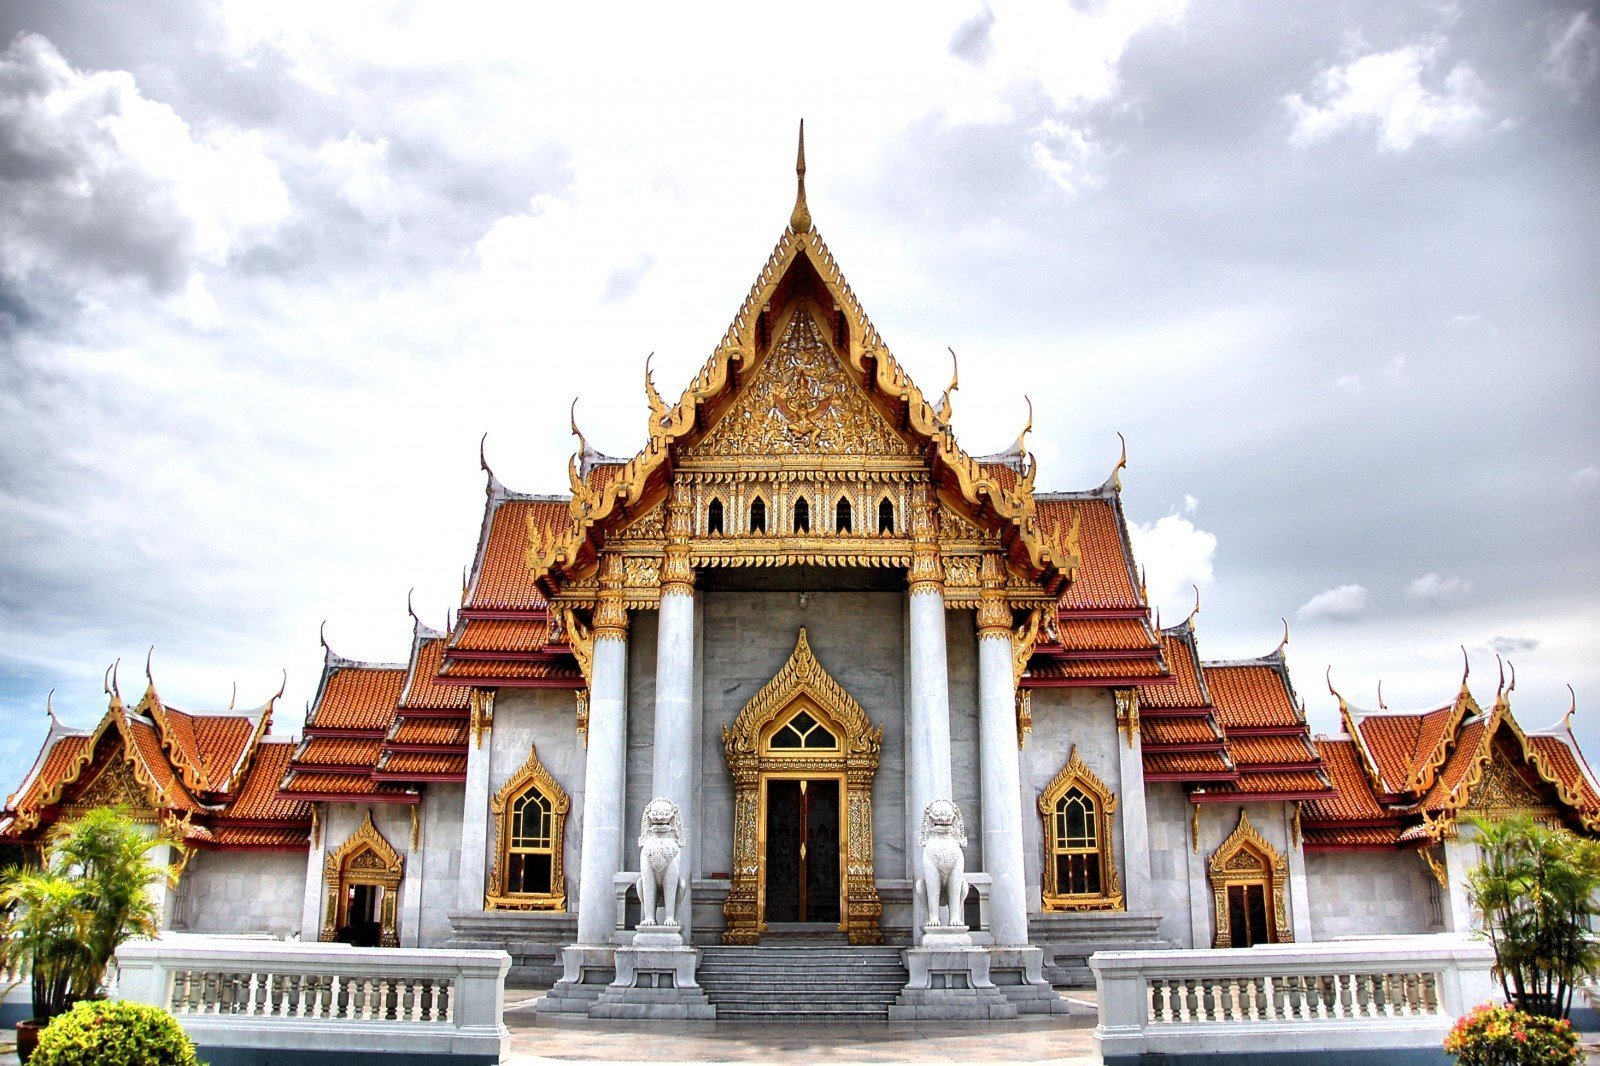 Bangkok's 9 Royal Temples